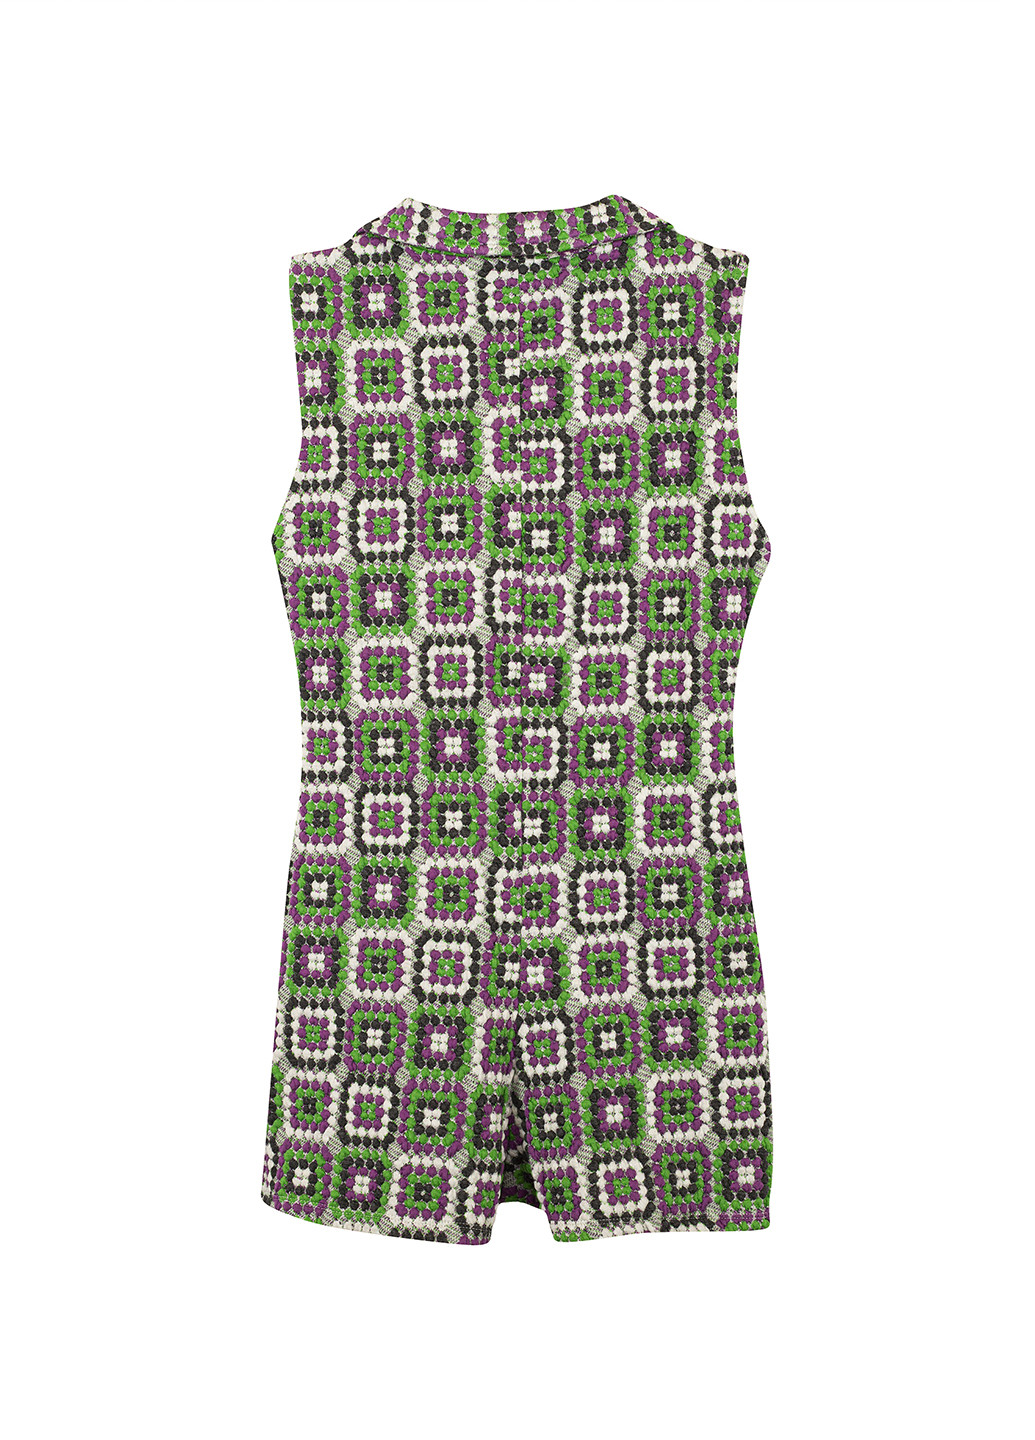 Комбинезон New Girl Order комбинезон-шорты геометрический комбинированный кэжуал полиэстер